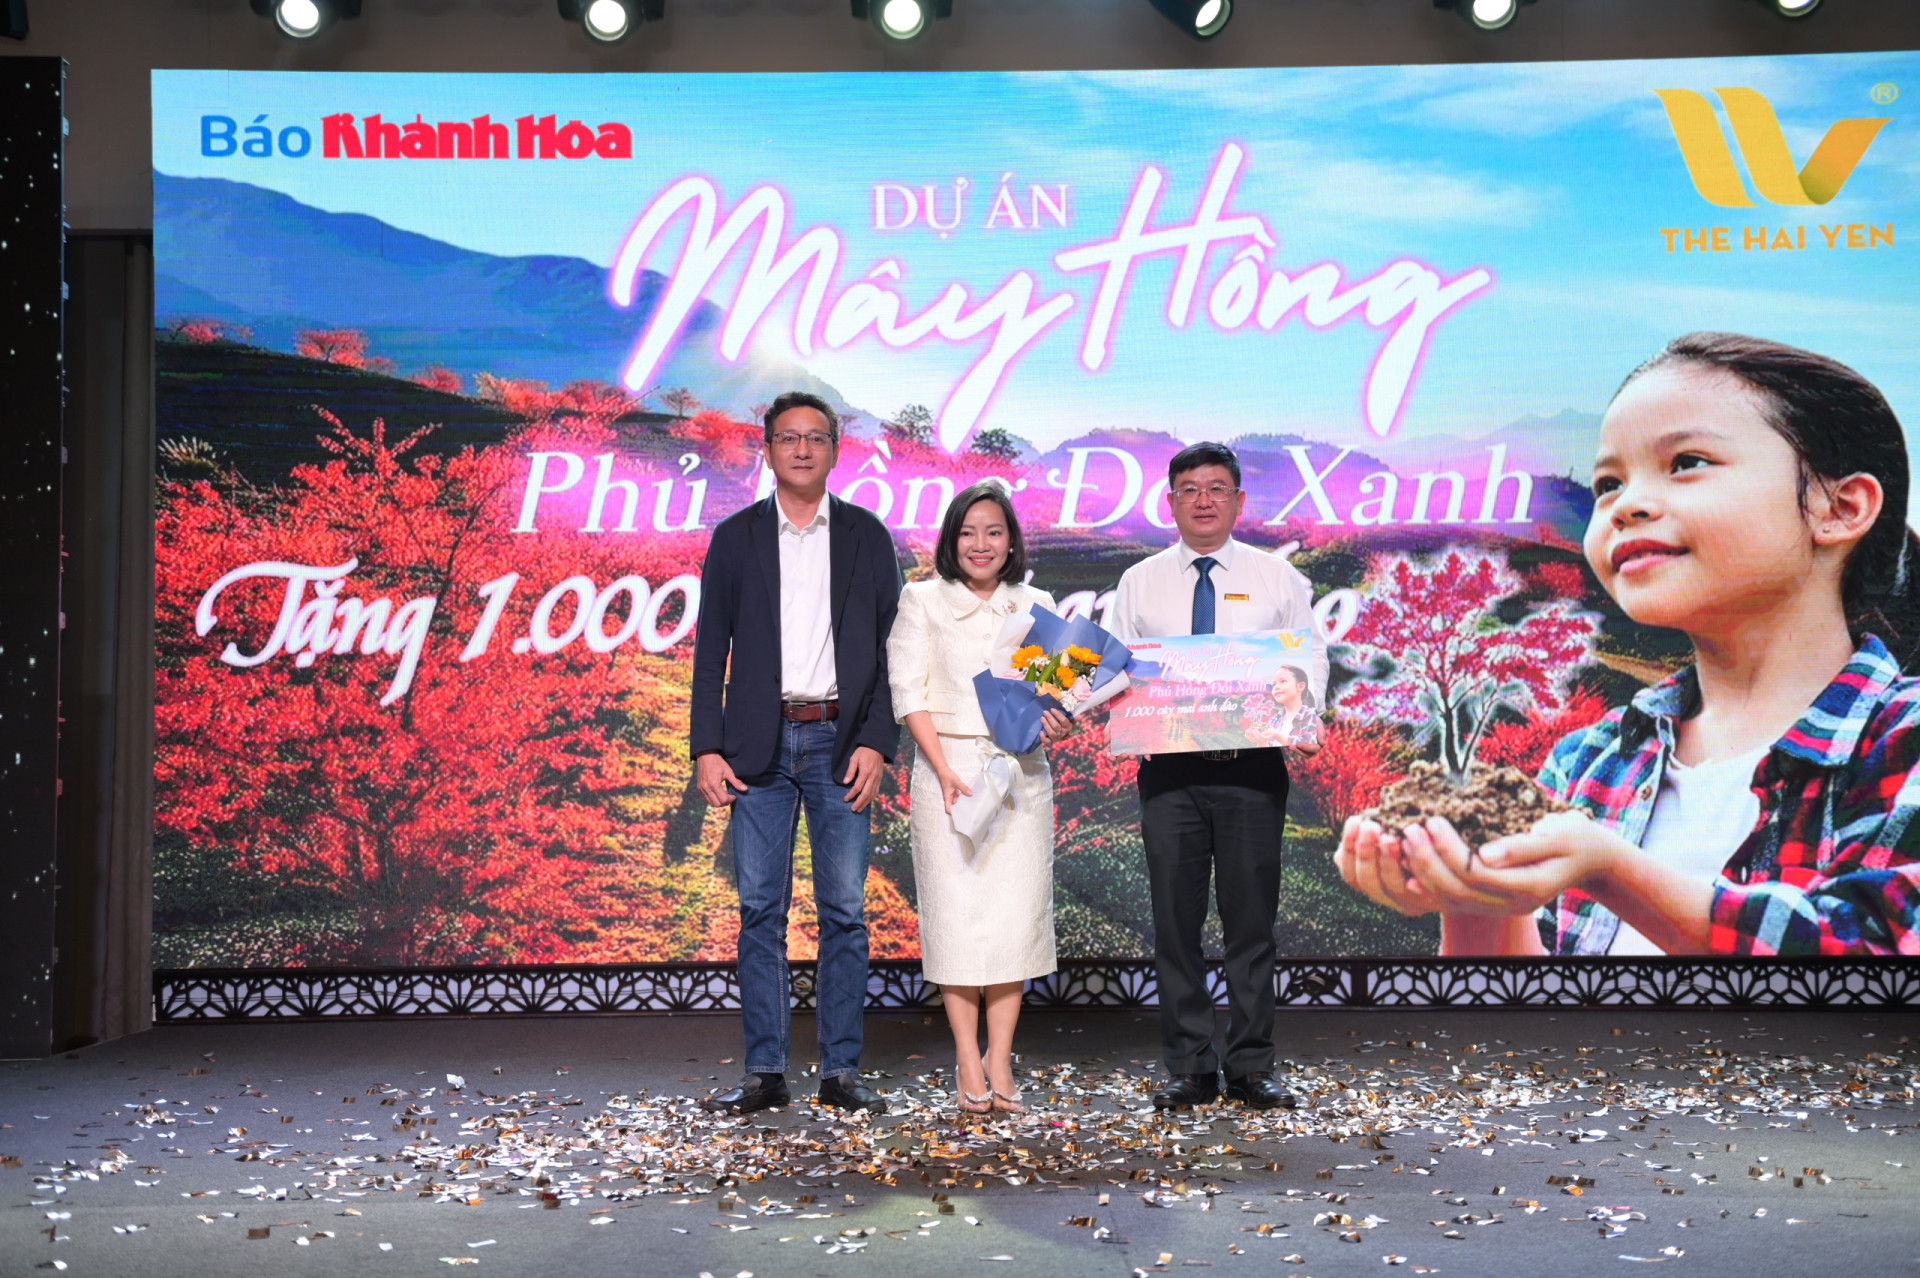 Đại diện Công ty TNHH MTV Thương mại Hải Yến Nha Trang trao bảng tượng trưng tài trợ 1.000 cây mai anh đào để tiếp tục thực hiện dự án “Mây hồng phủ hồng đồi xanh” ở huyện Khánh Sơn. Ảnh: Vĩnh Thành.

